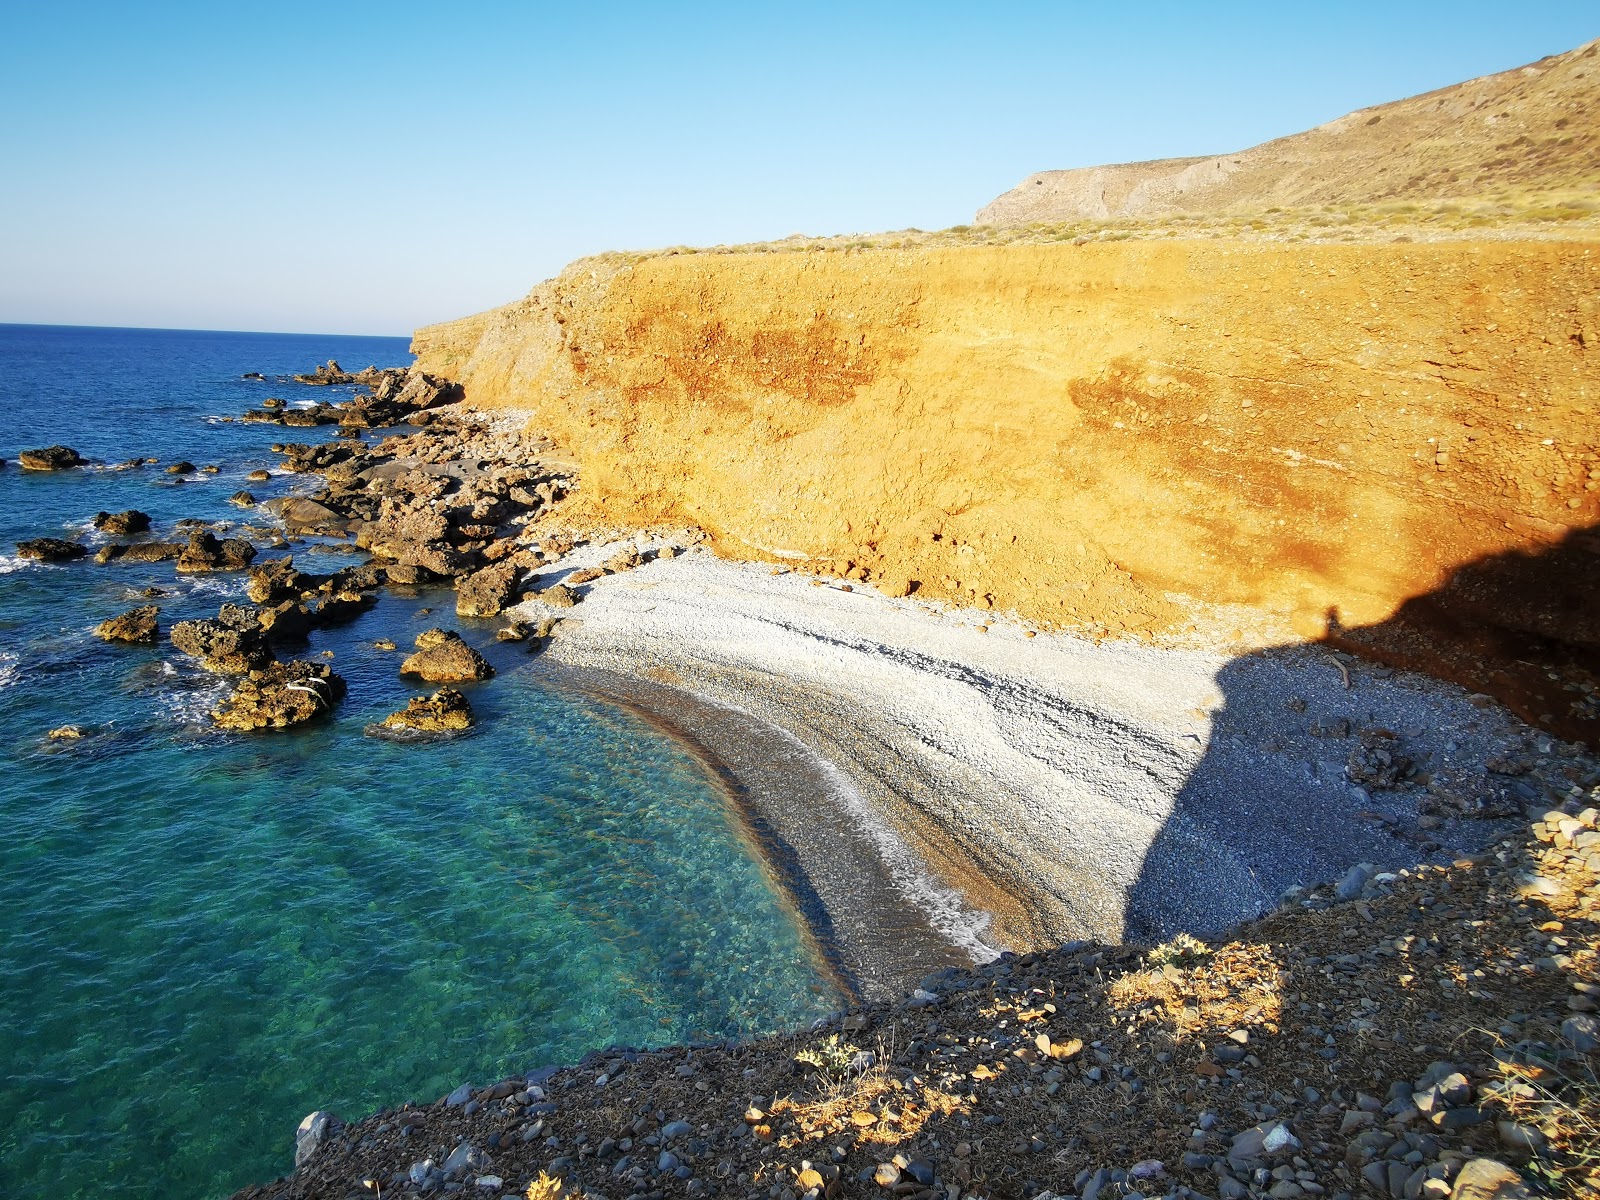 Foto von Anogeia beach mit heller kies Oberfläche